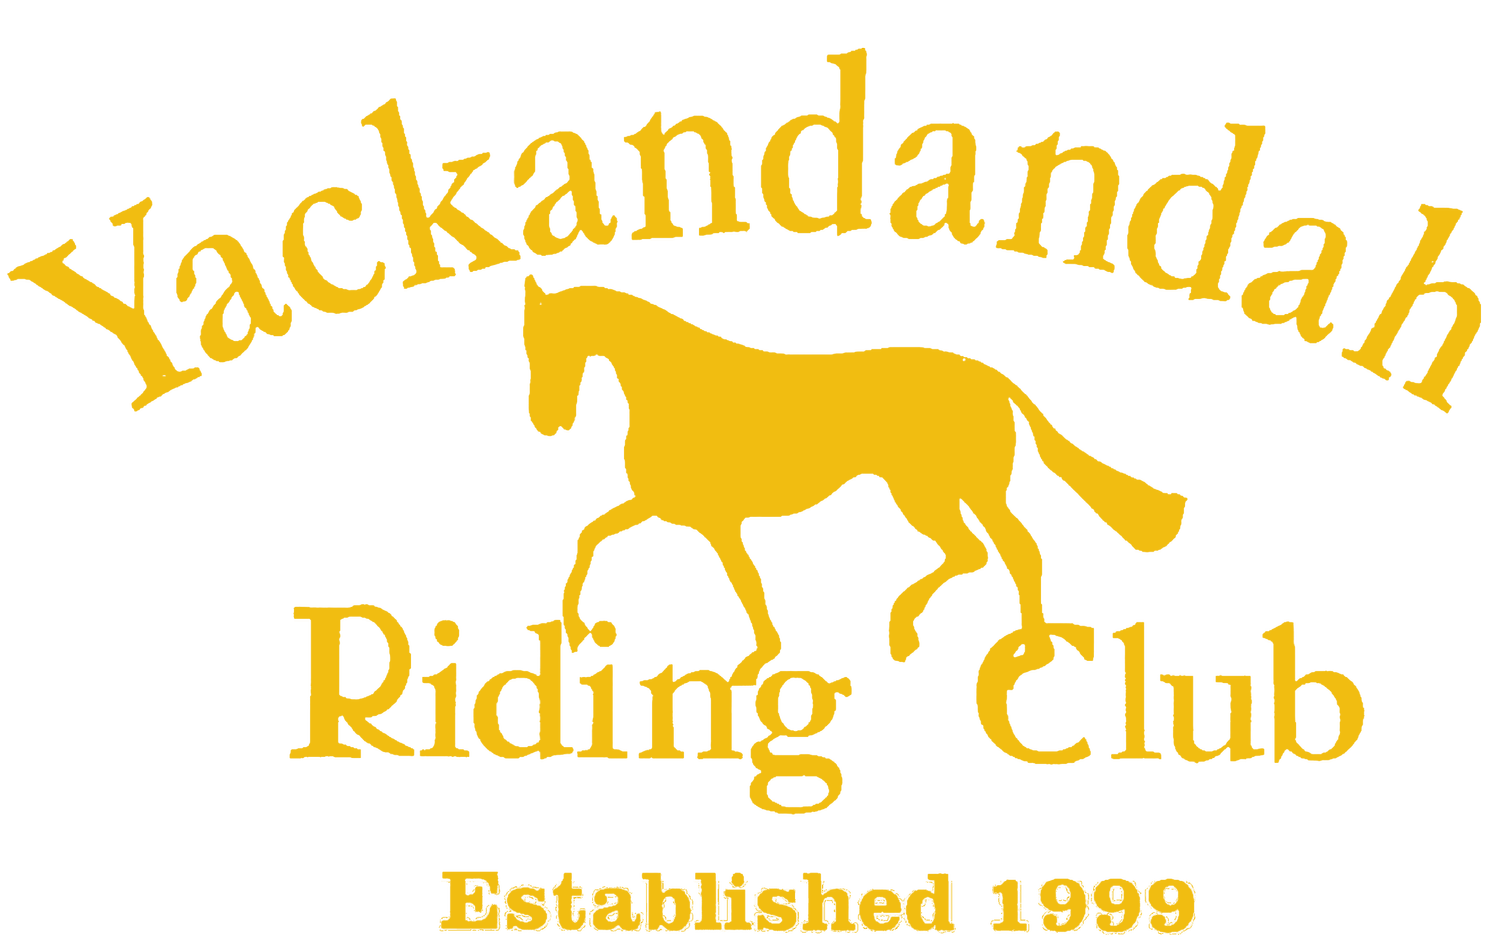 Yackandandah Riding Club (YRC)